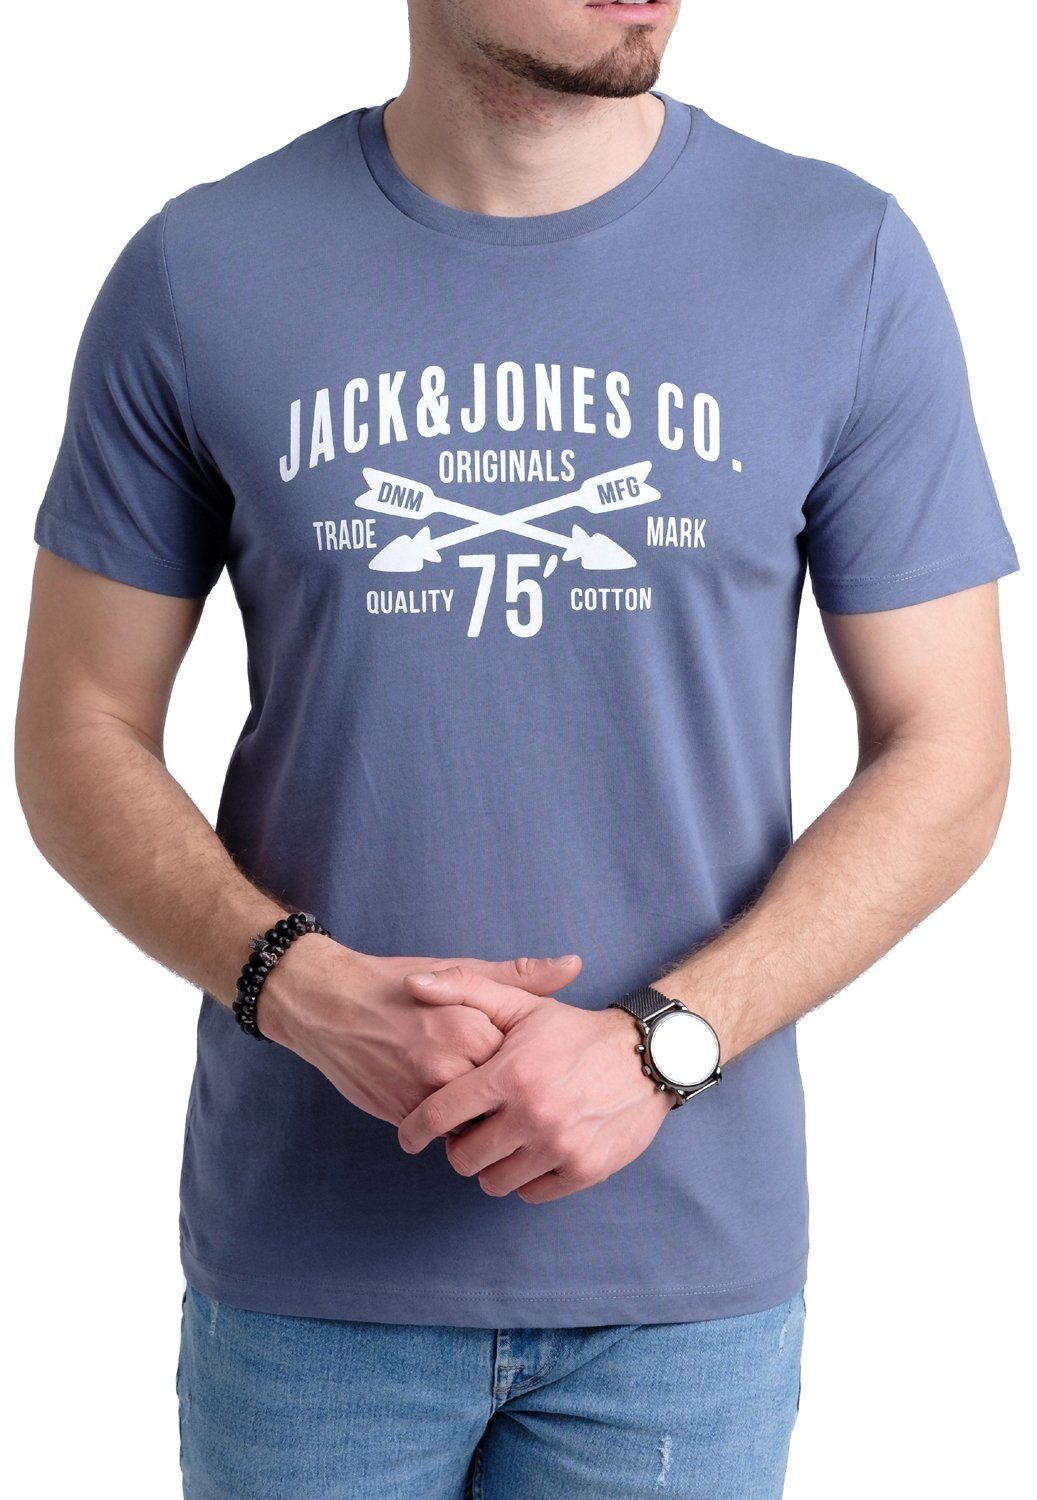 OPT Baumwolle mit 9 Jones Jack aus T-Shirt Aufdruck & Print-Shirt